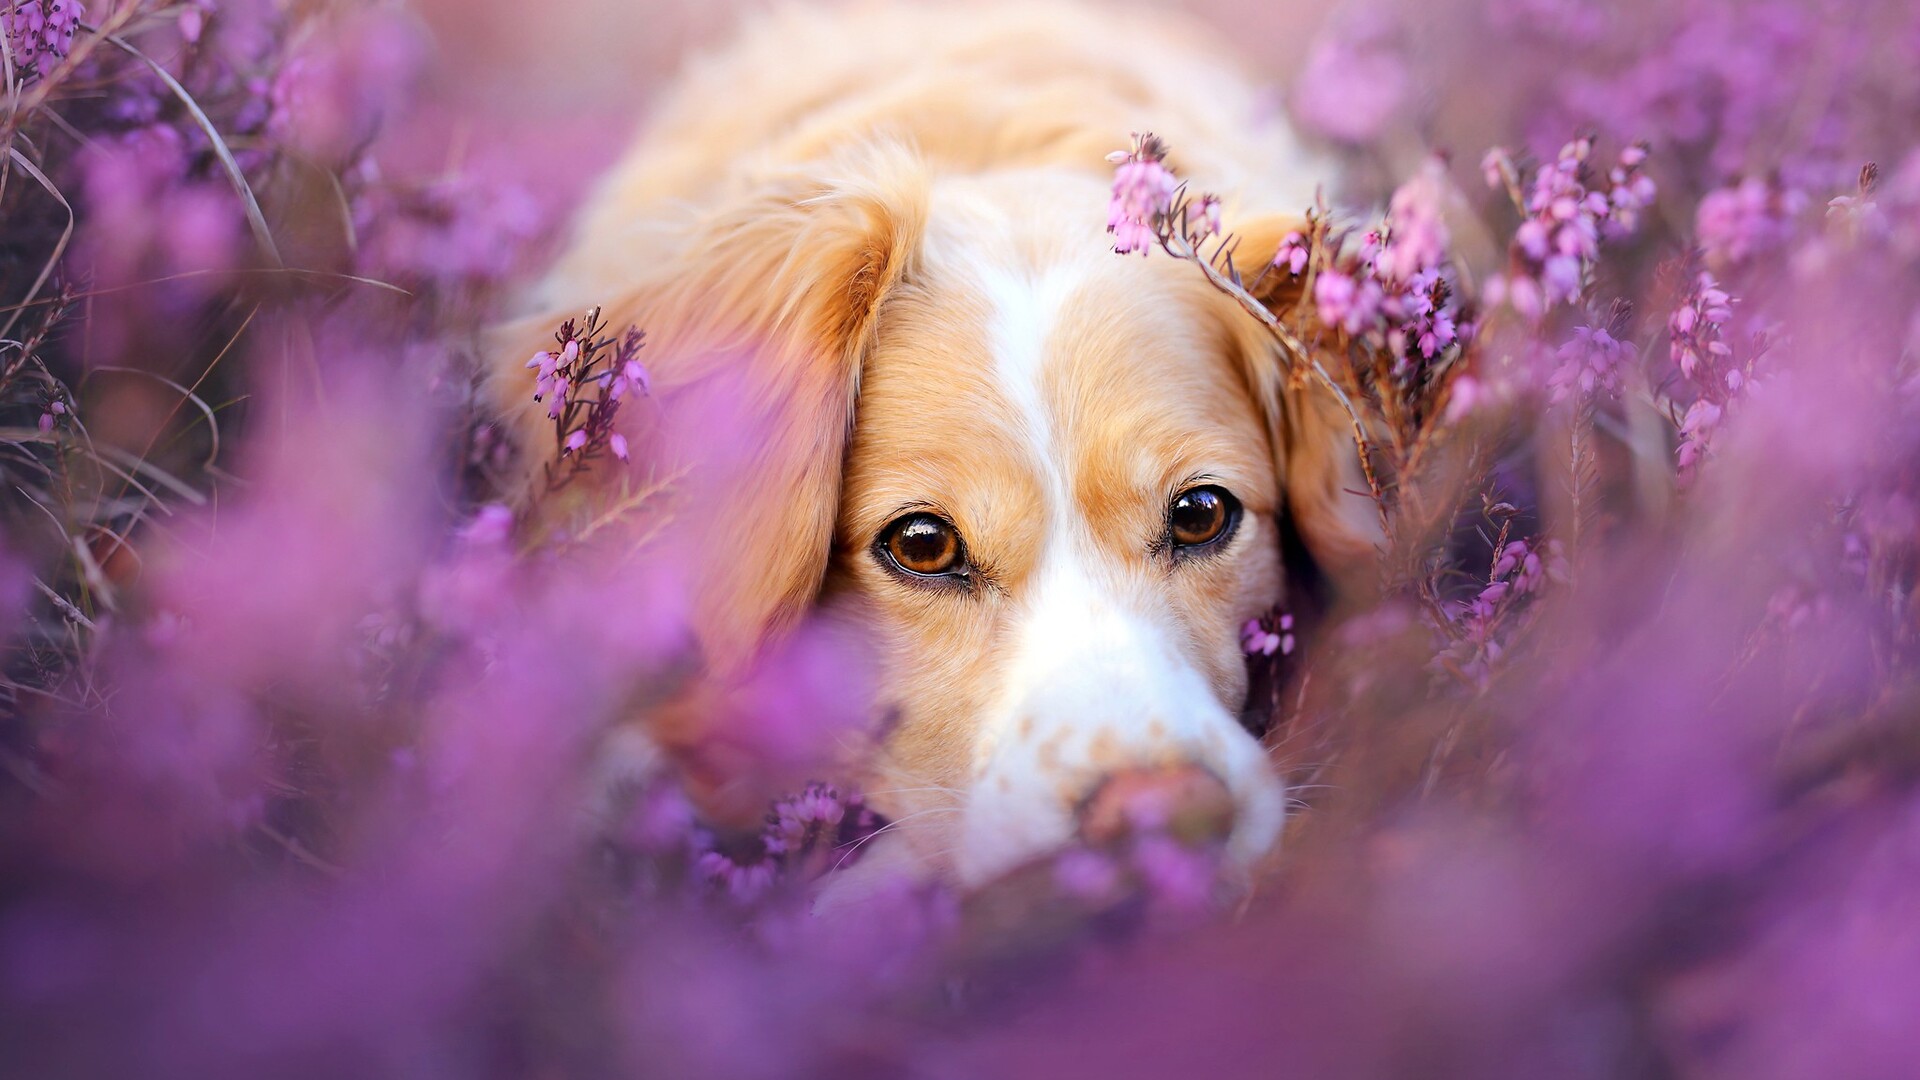 1920x1080 Cute Dog In Flowers Laptop Full HD 1080P HD 4k Wallpapers ...